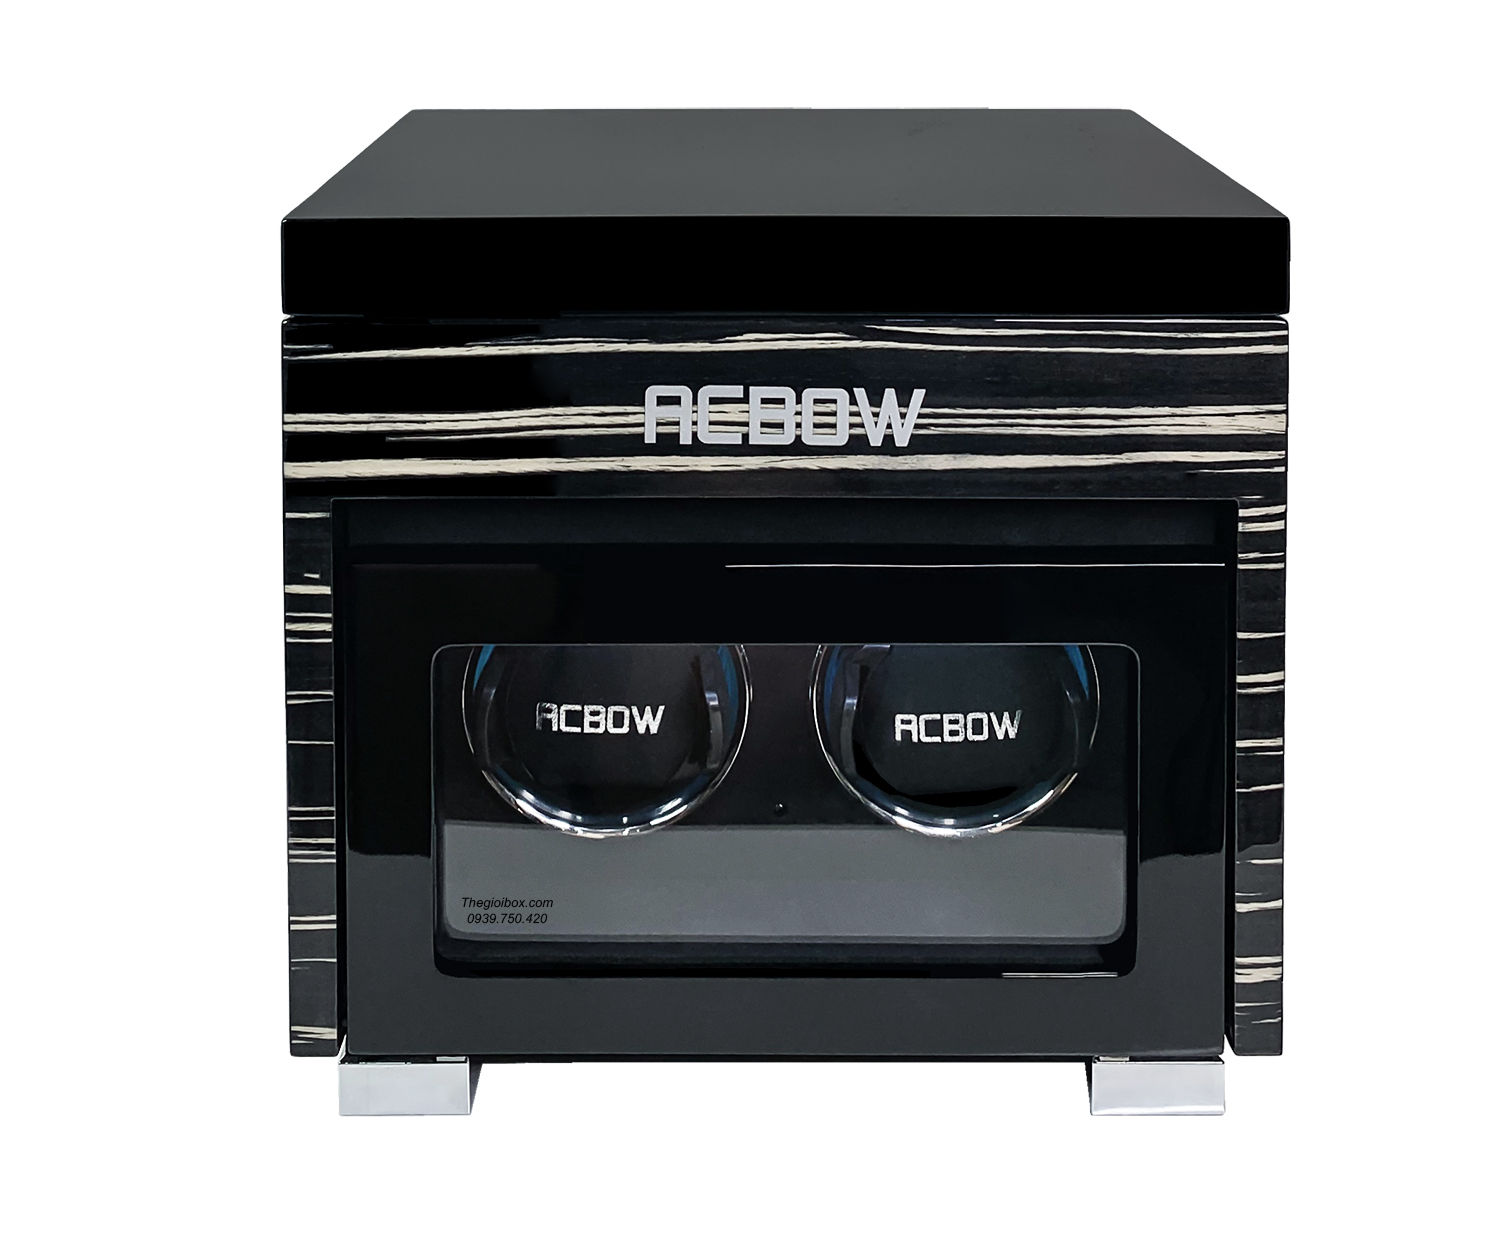 Hộp đựng đồng hồ cơ ACBOW 2 xoay 4 tĩnh cao cấp kèm remote - màn hình cảm ứng - đèn LED giá rẻ